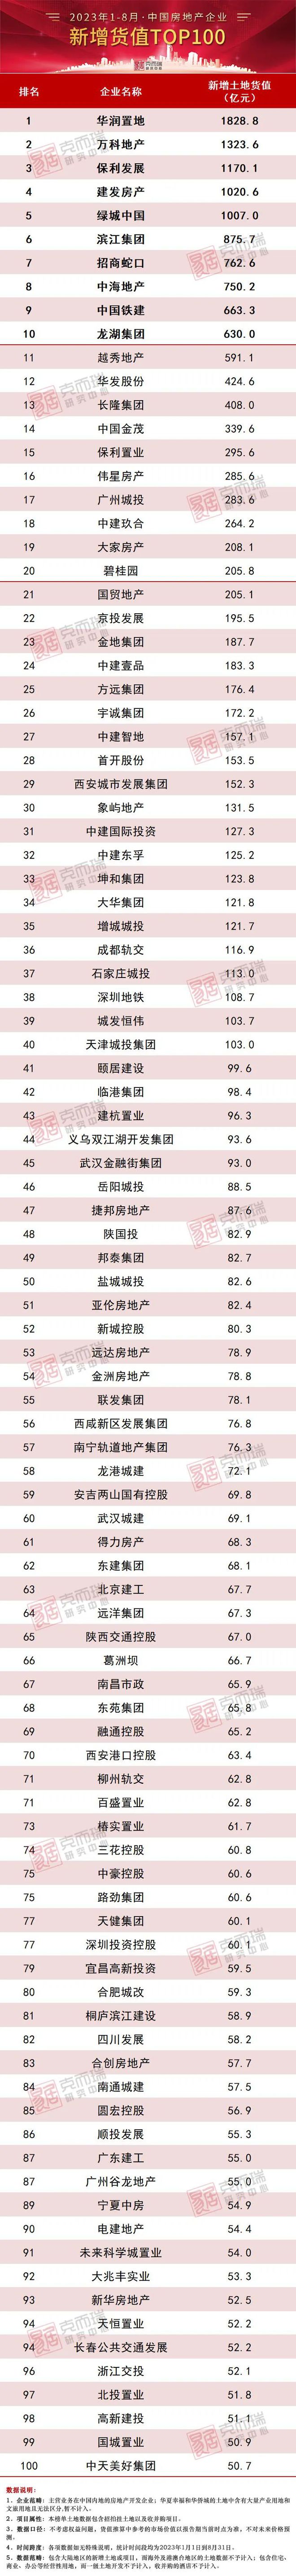 2023年1-8月中国房地产企业新增货值TOP100排行榜